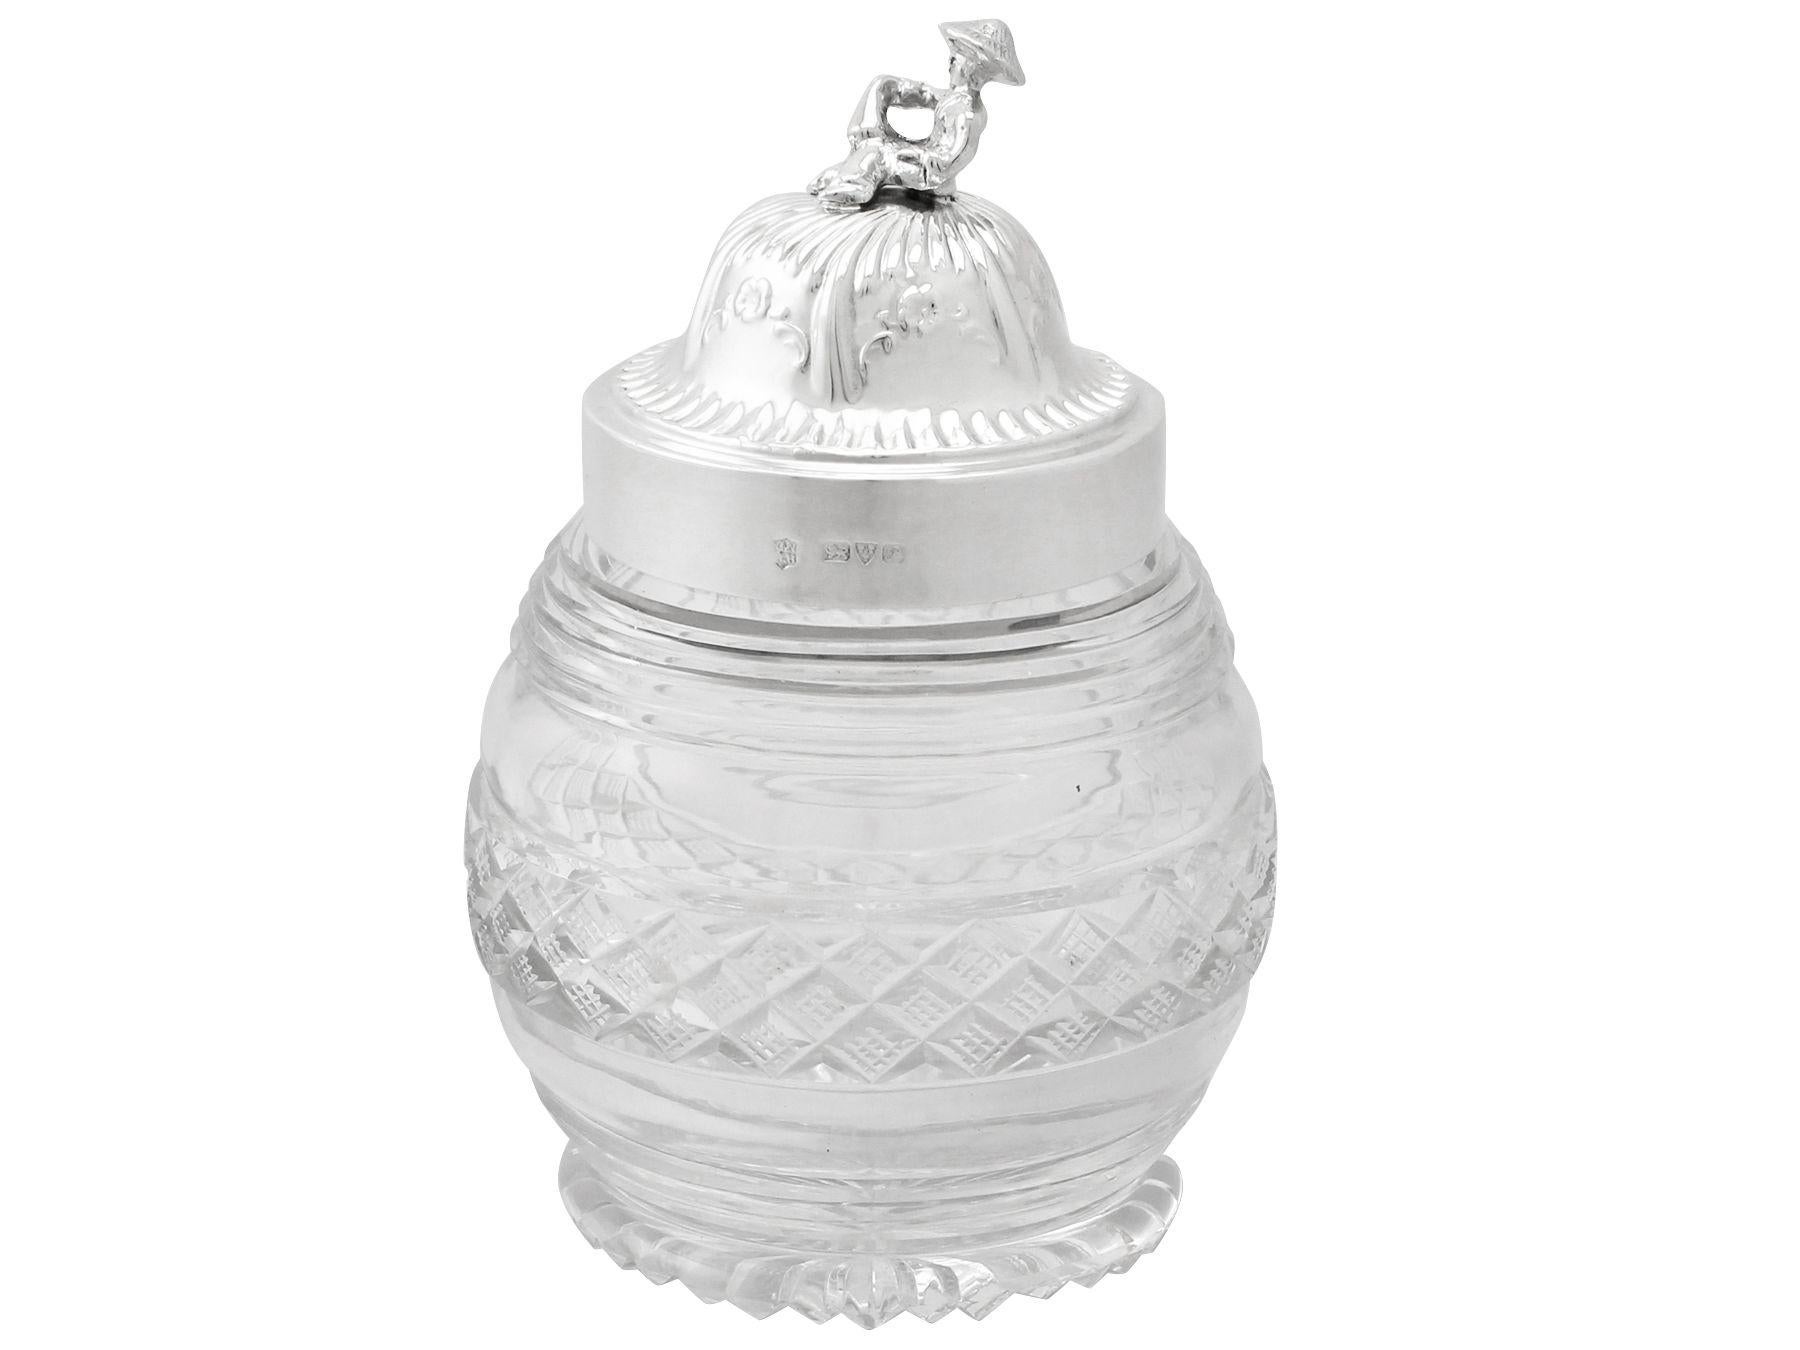 Ein feiner und beeindruckender antiker Teedose aus englischem Sterlingsilber und geschliffenem Glas von George V., eine Ergänzung zu unserer Sammlung von in Silber gefassten Gläsern.

Diese beeindruckende antike Teedose aus geschliffenem Glas von